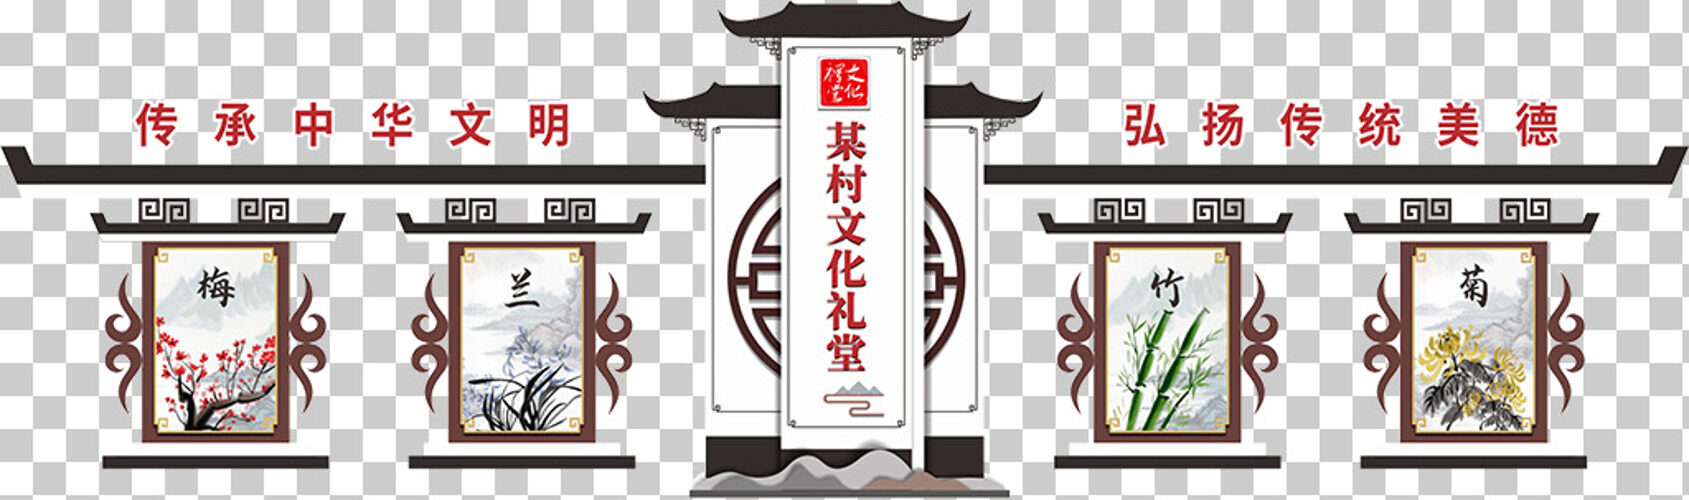 中式复古国风文化礼堂宣传栏文化墙